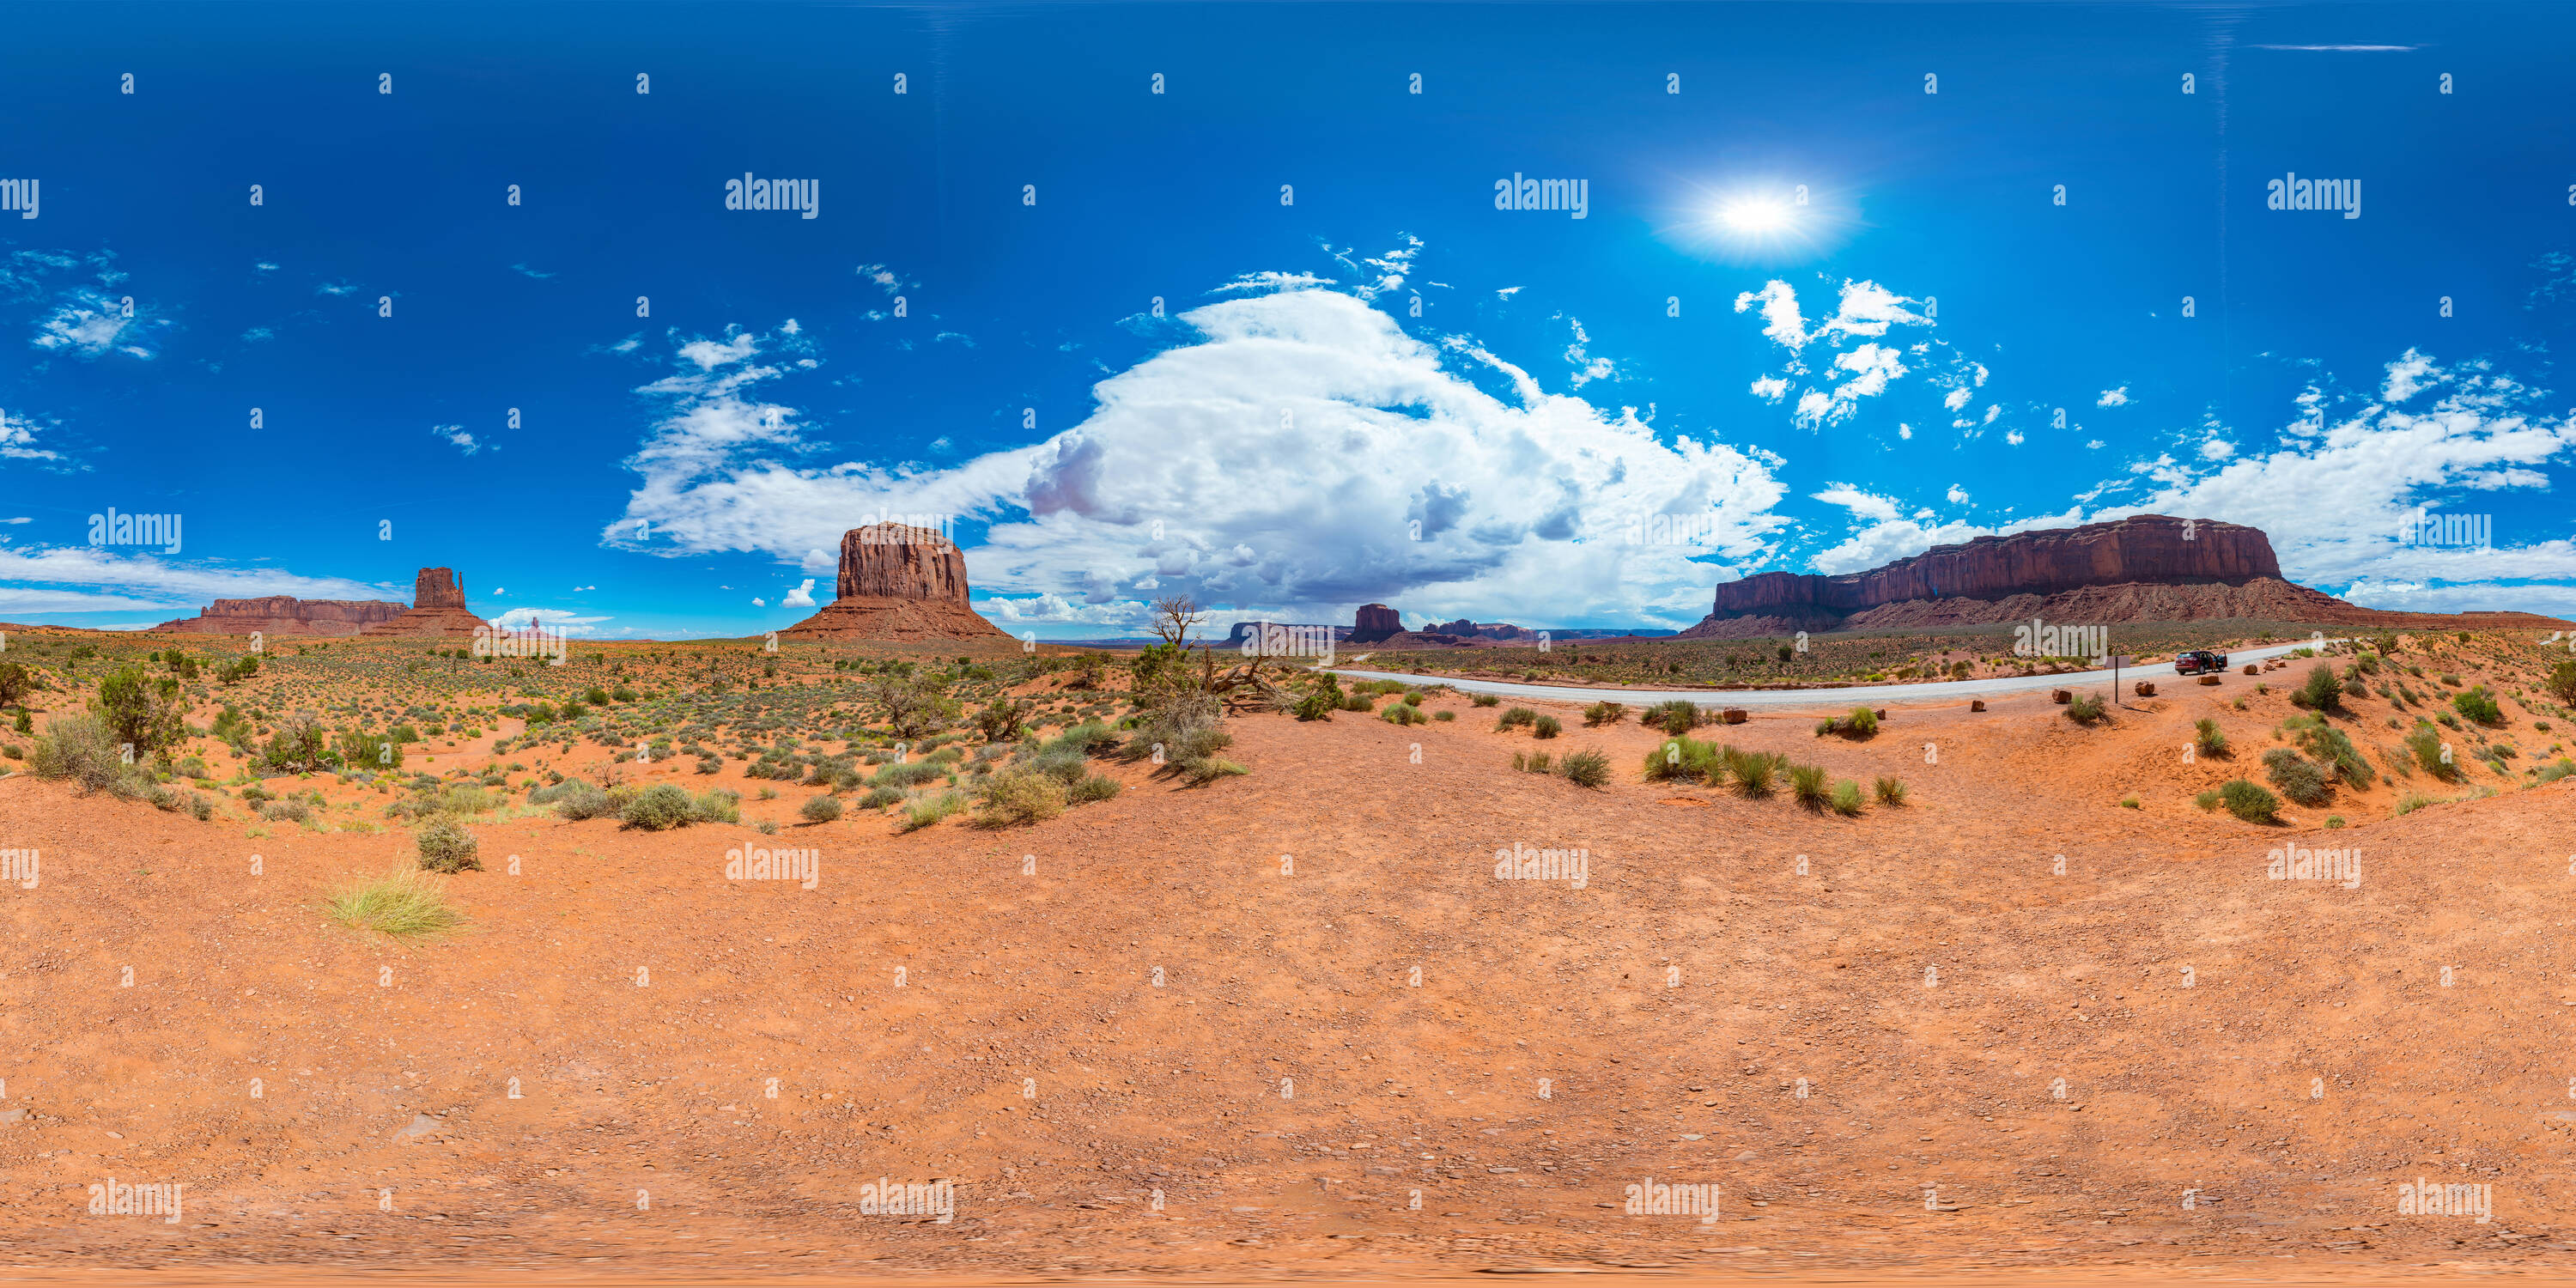 Vue panoramique à 360° de Monument Valley Navajo Tribal Park